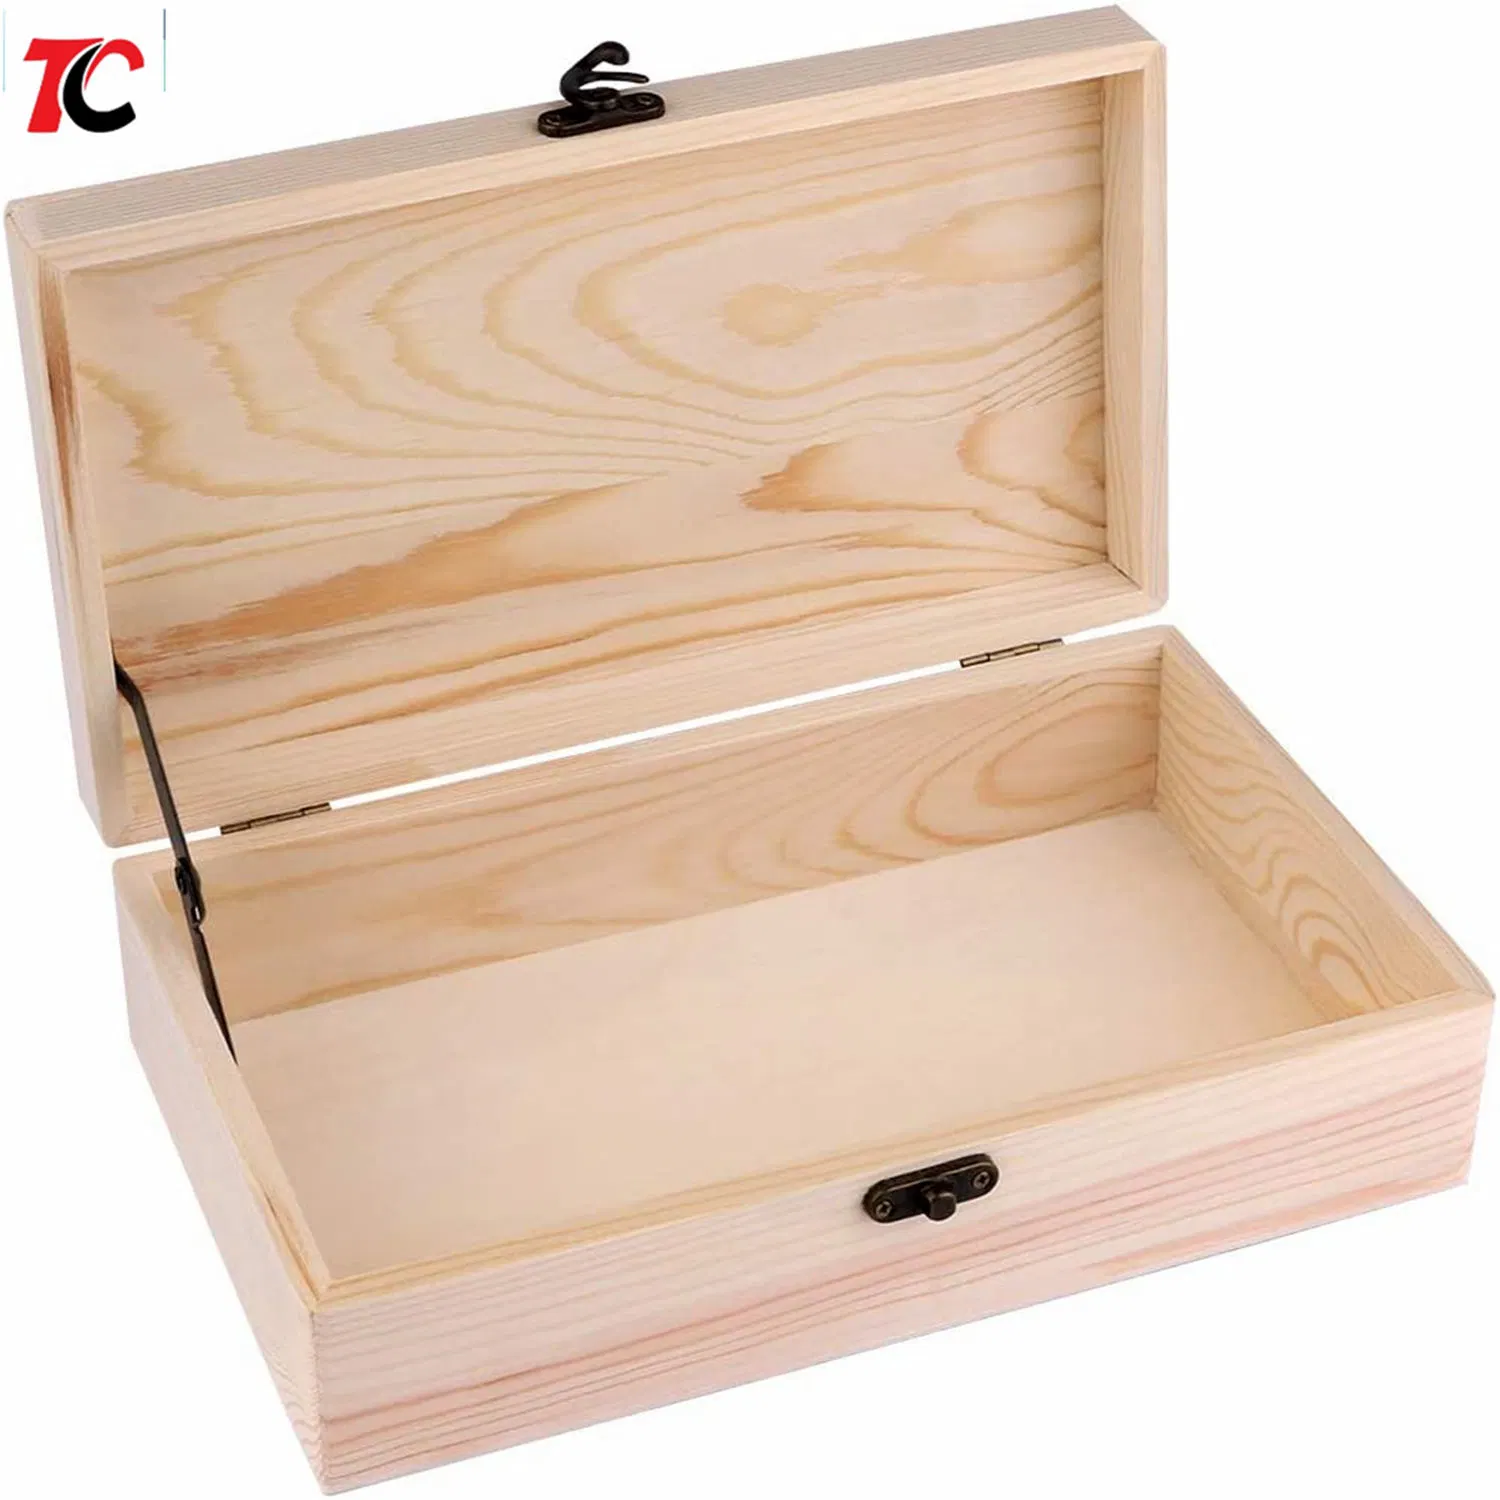 Unfertige Holzkiste mit rechteckigen Keepsake Box Spange Holzkiste, Aufbewahrungsbox Holz Geschenkboxen für DIY Handwerk